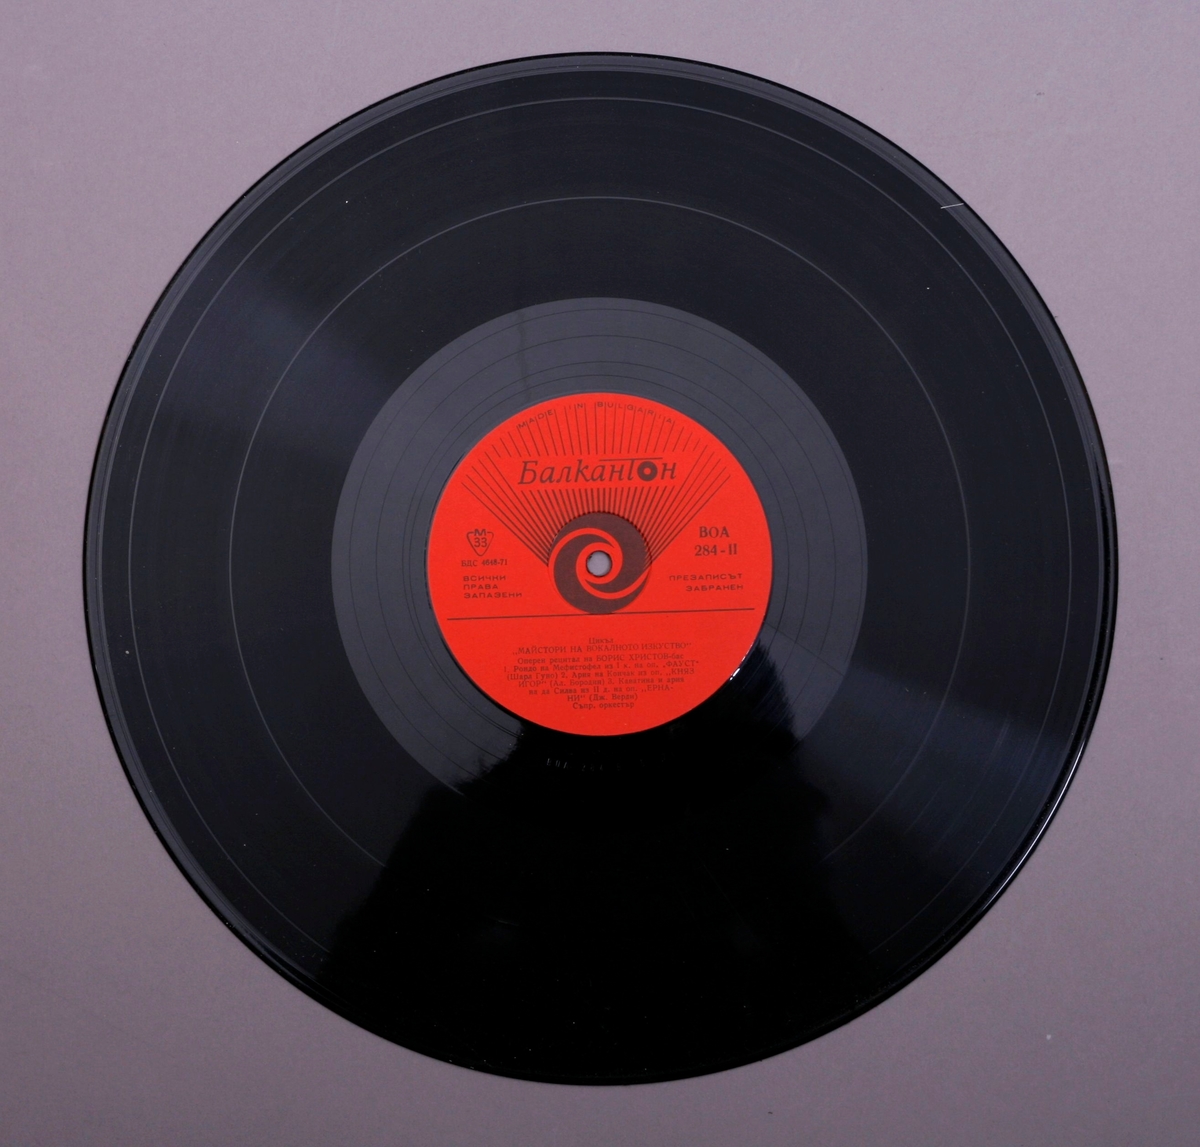 Grammofonplate i svart vinyl og plateomslag i tynn papp. Plata ligger i en plastlomme.